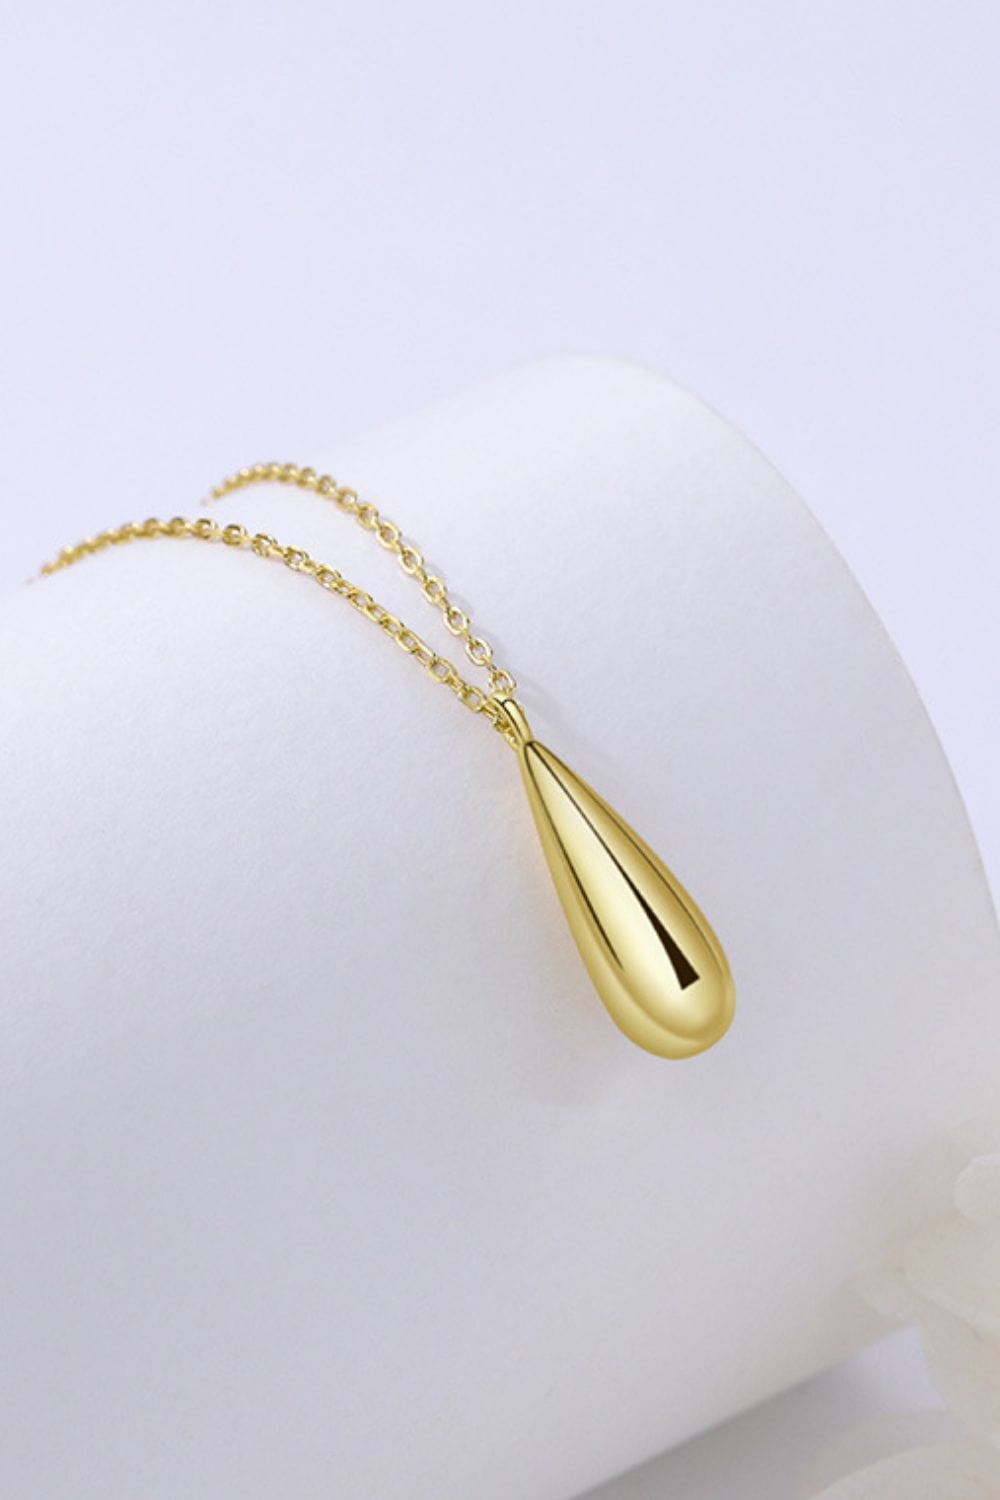 18K Gold-Plated Pendant Necklace - Body By J'ne